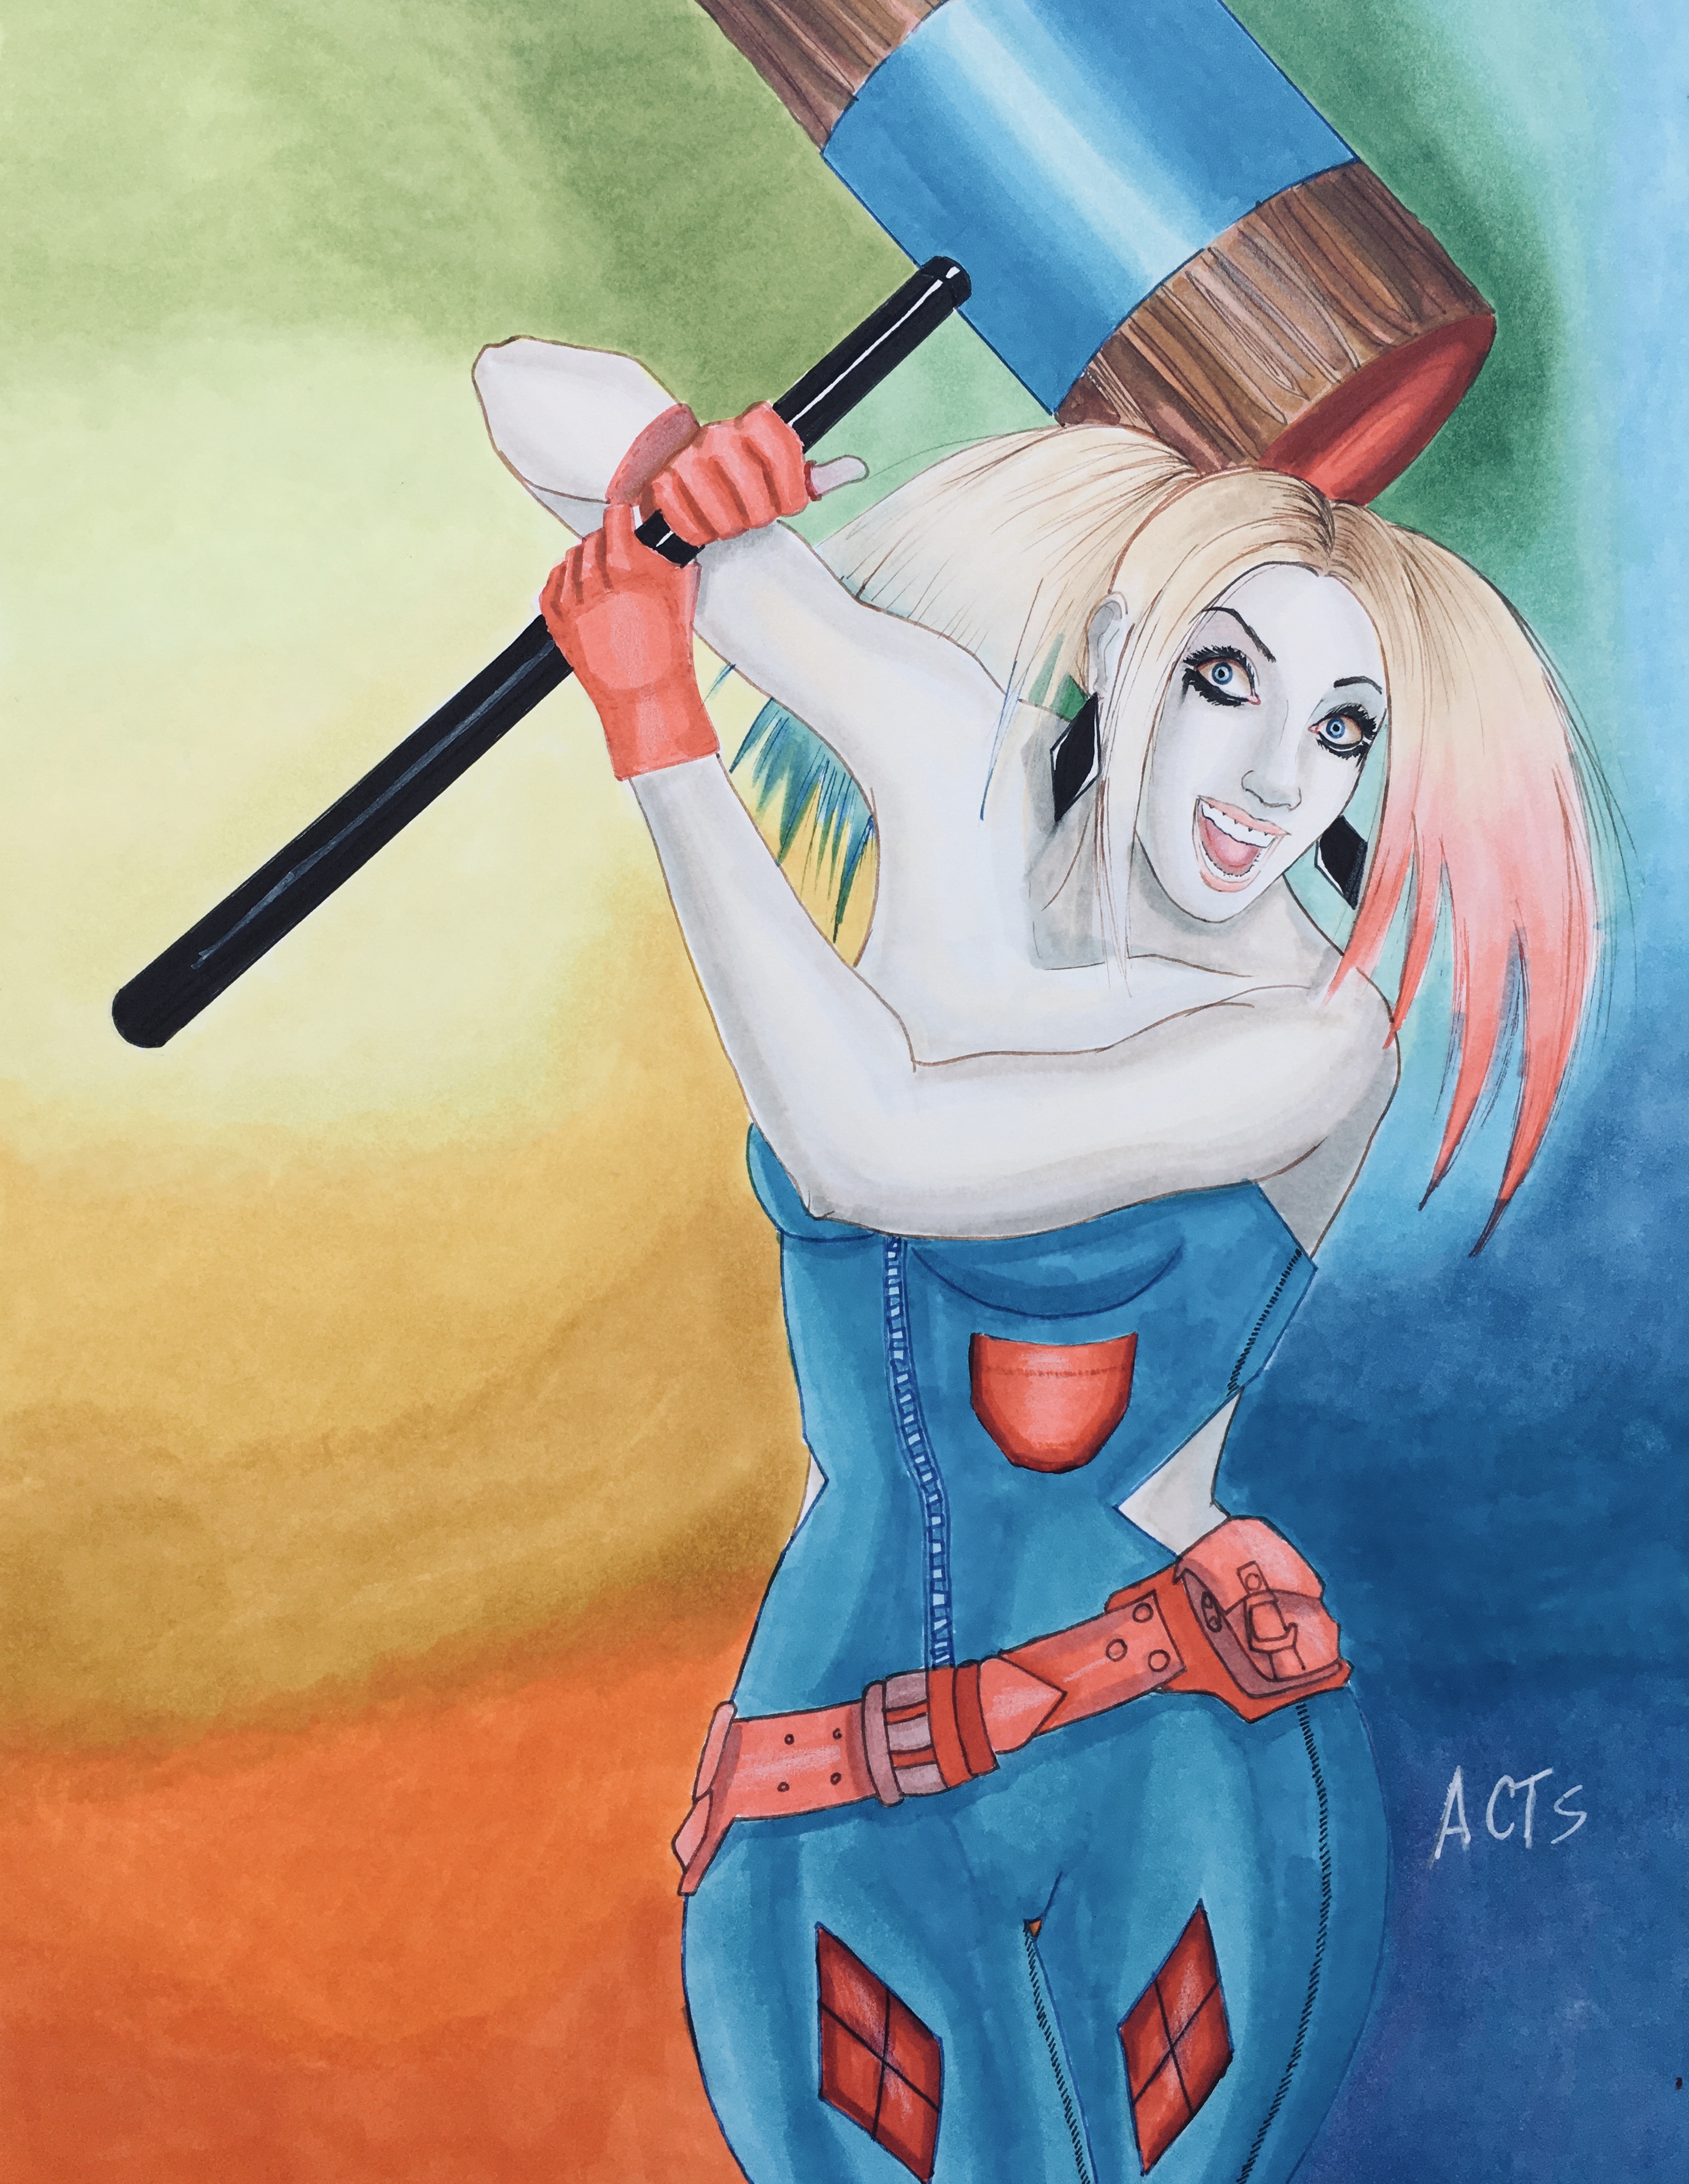 Harley Quinn Swings her Mallet